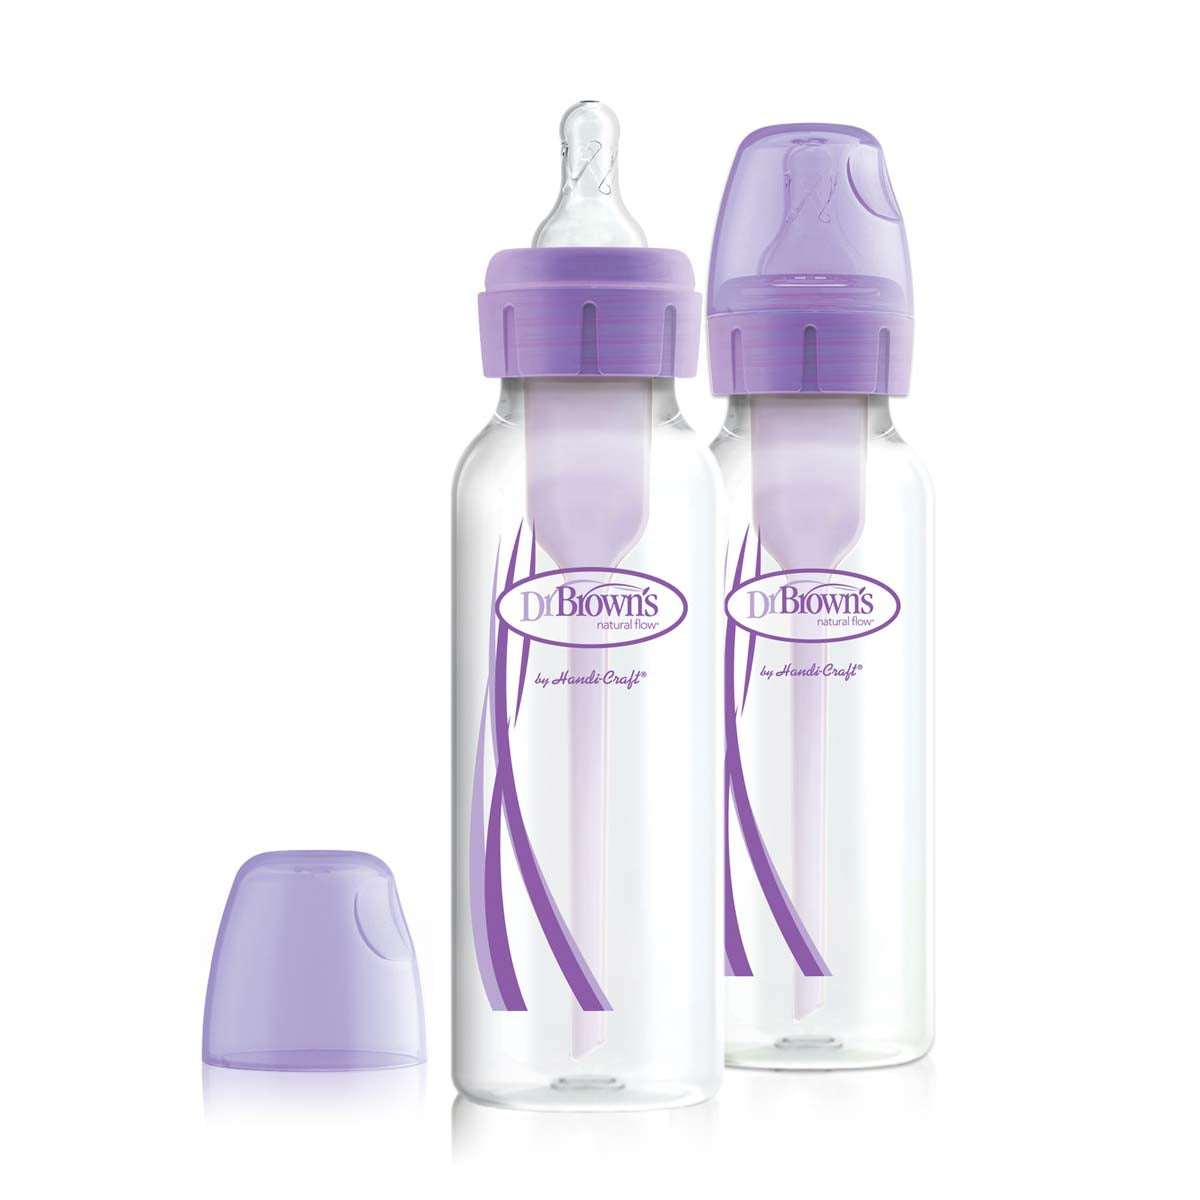 Dit is de Dr. Brown's babyfles smal 250 ml purple 2 stuks. Een set van 2 250 ml flessen met het bekende anti-koliek ventielsysteem van Dr Brown’s. De flesjes hebben een standaard hals fles, borstvormige speen maat 1. VanZus.